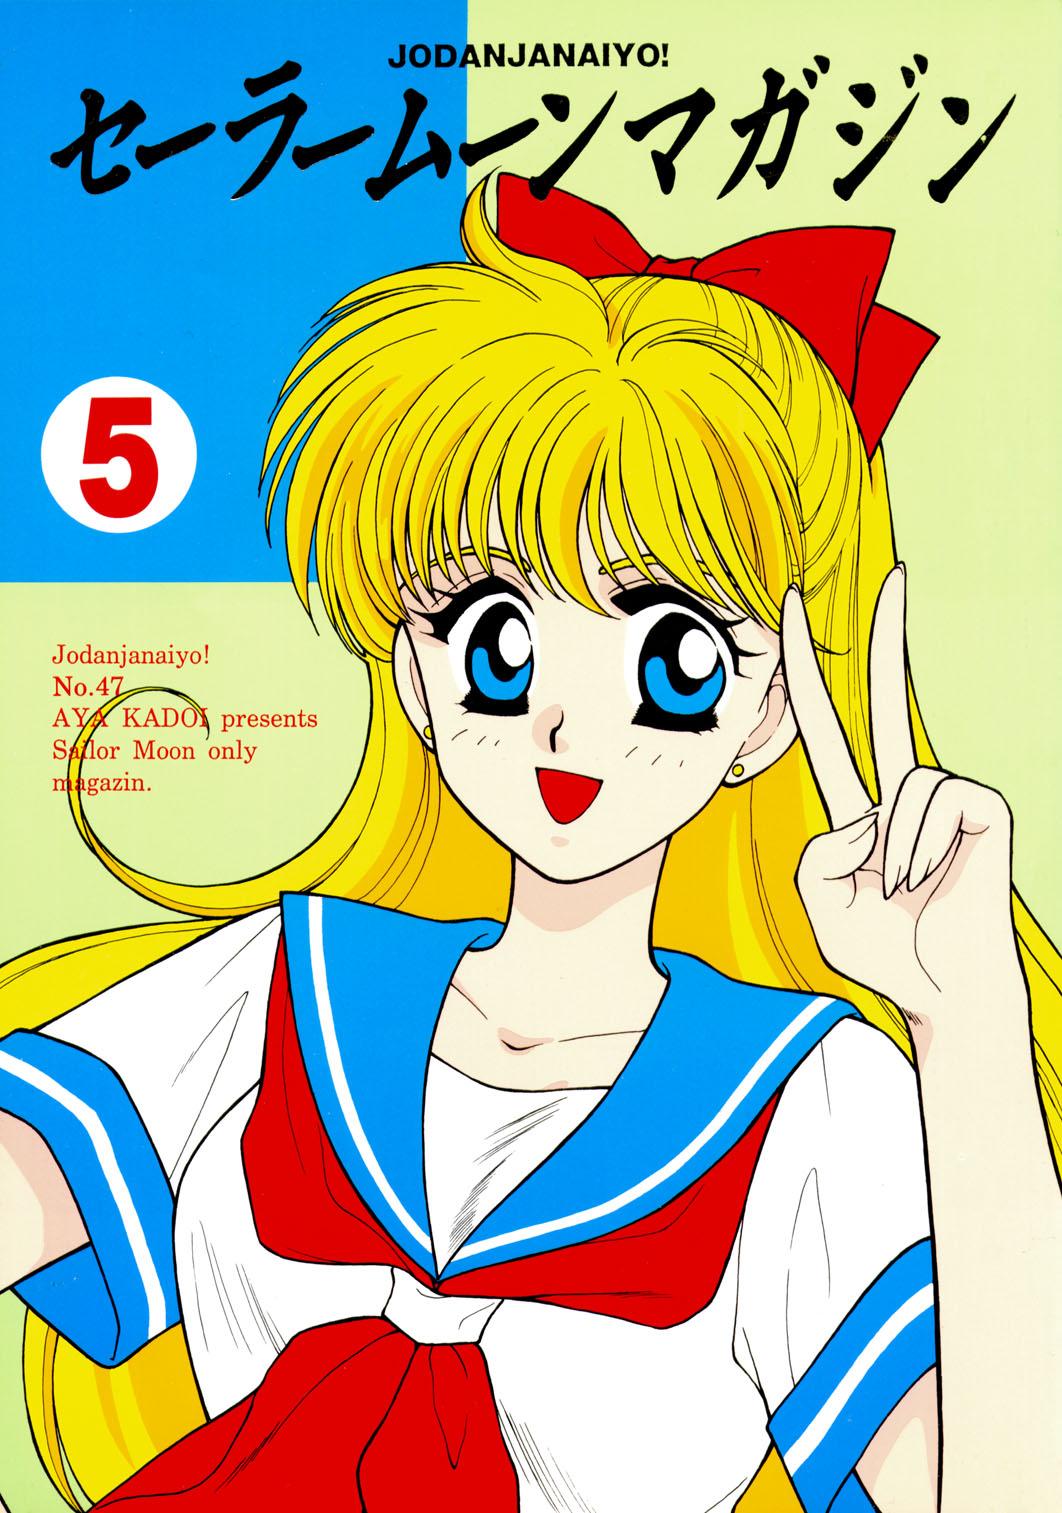 Sailor Moon JodanJanaiyo 112